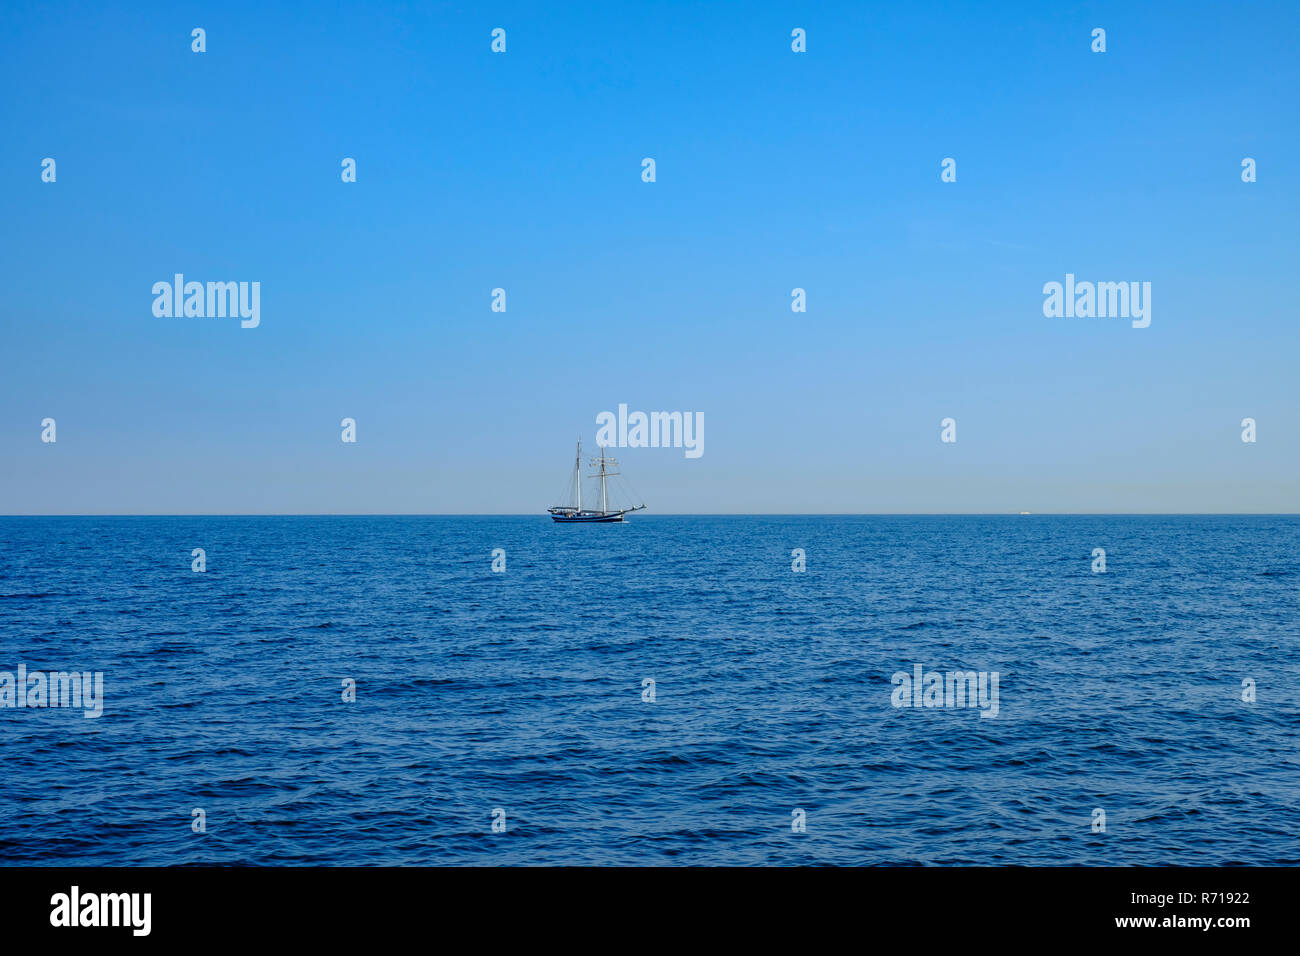 Das Schiff, dem Schoner BANJAARD, Segel über das Wasser am Horizont. Stockfoto